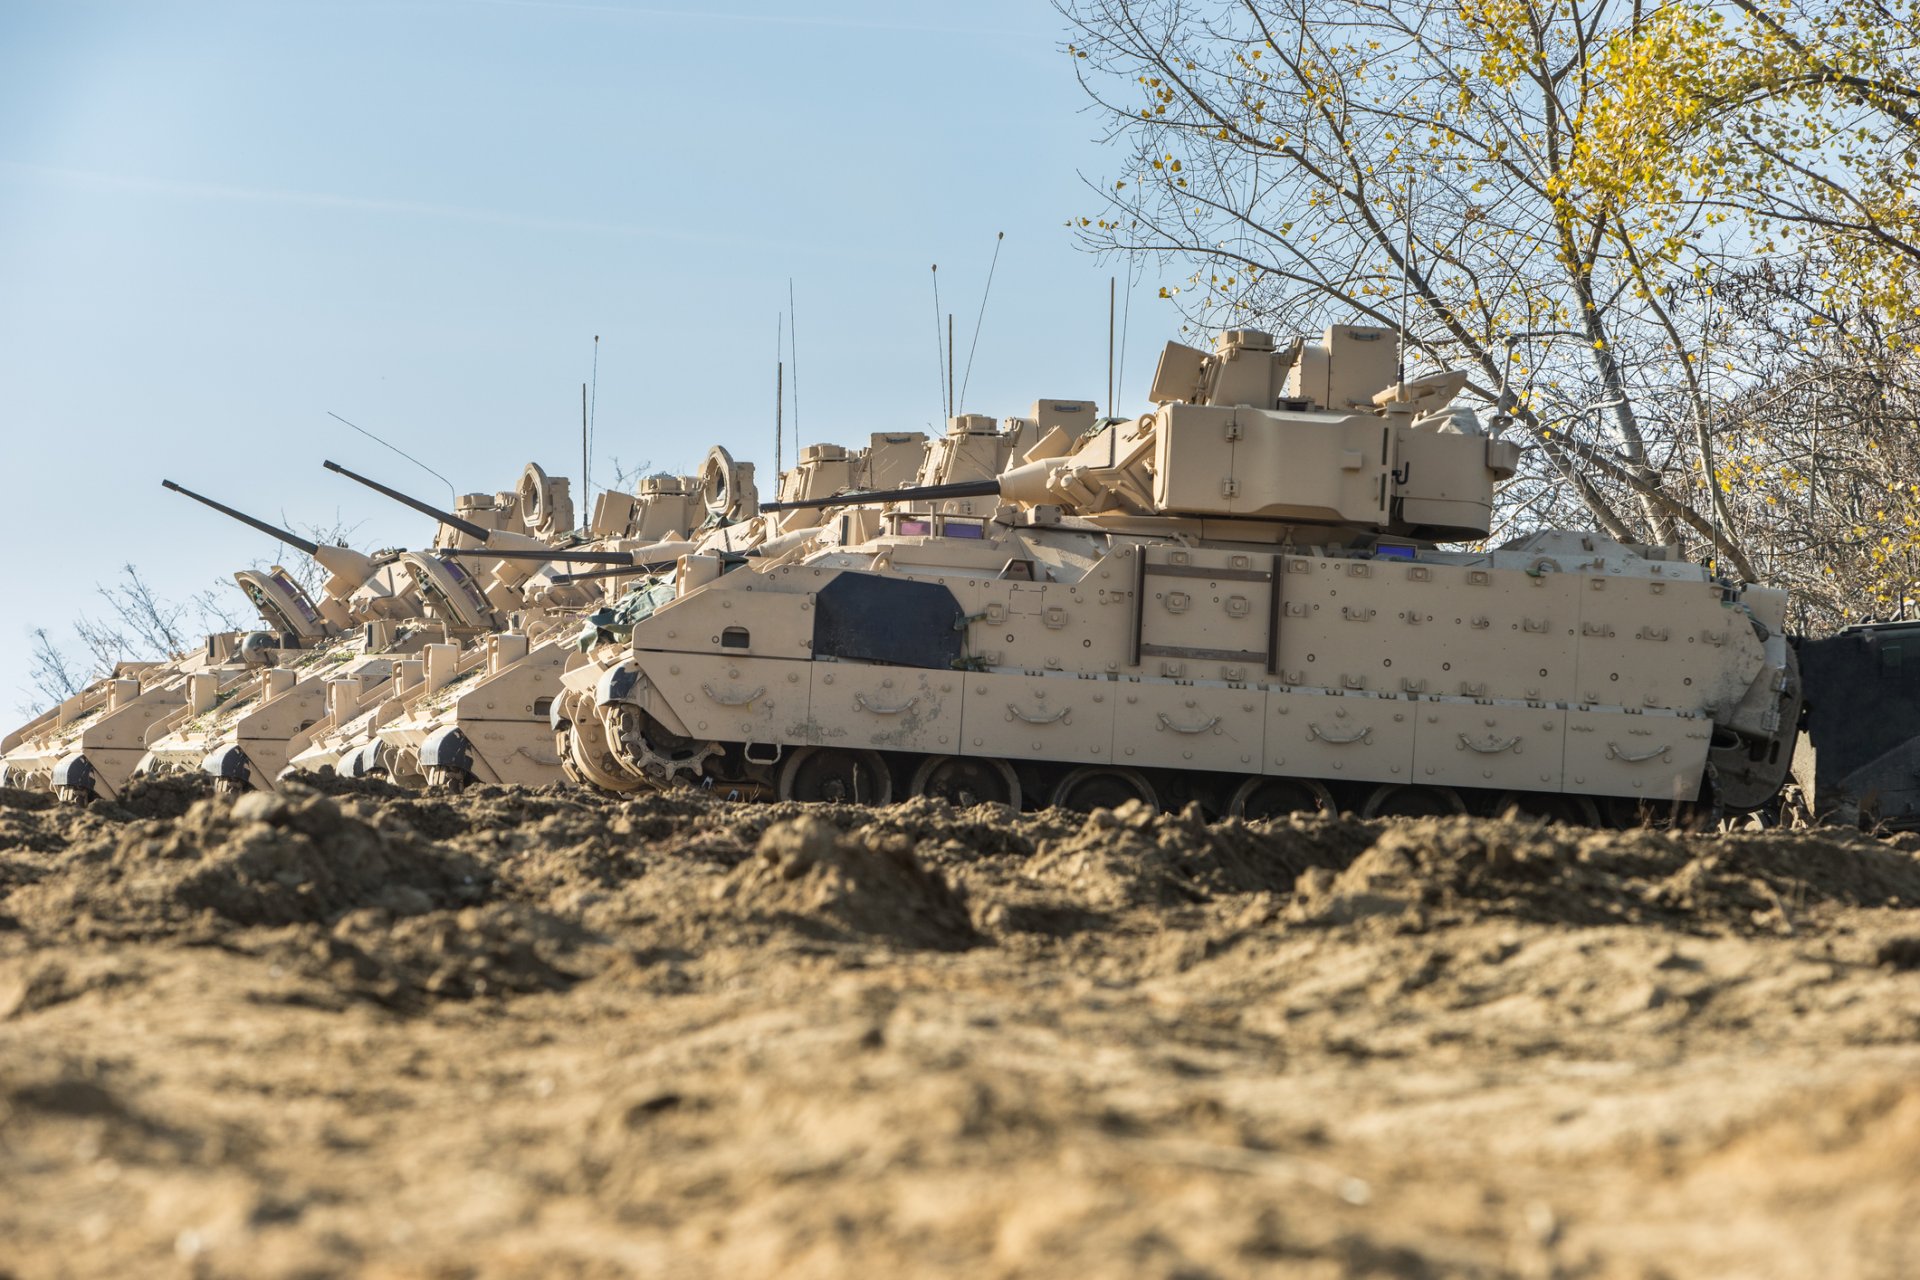 Машините "Брадли" може съществено да увеличат бойните възможности на украинските сухопътни сили, тъй като това всъщност е "лек танк", смятат експерти